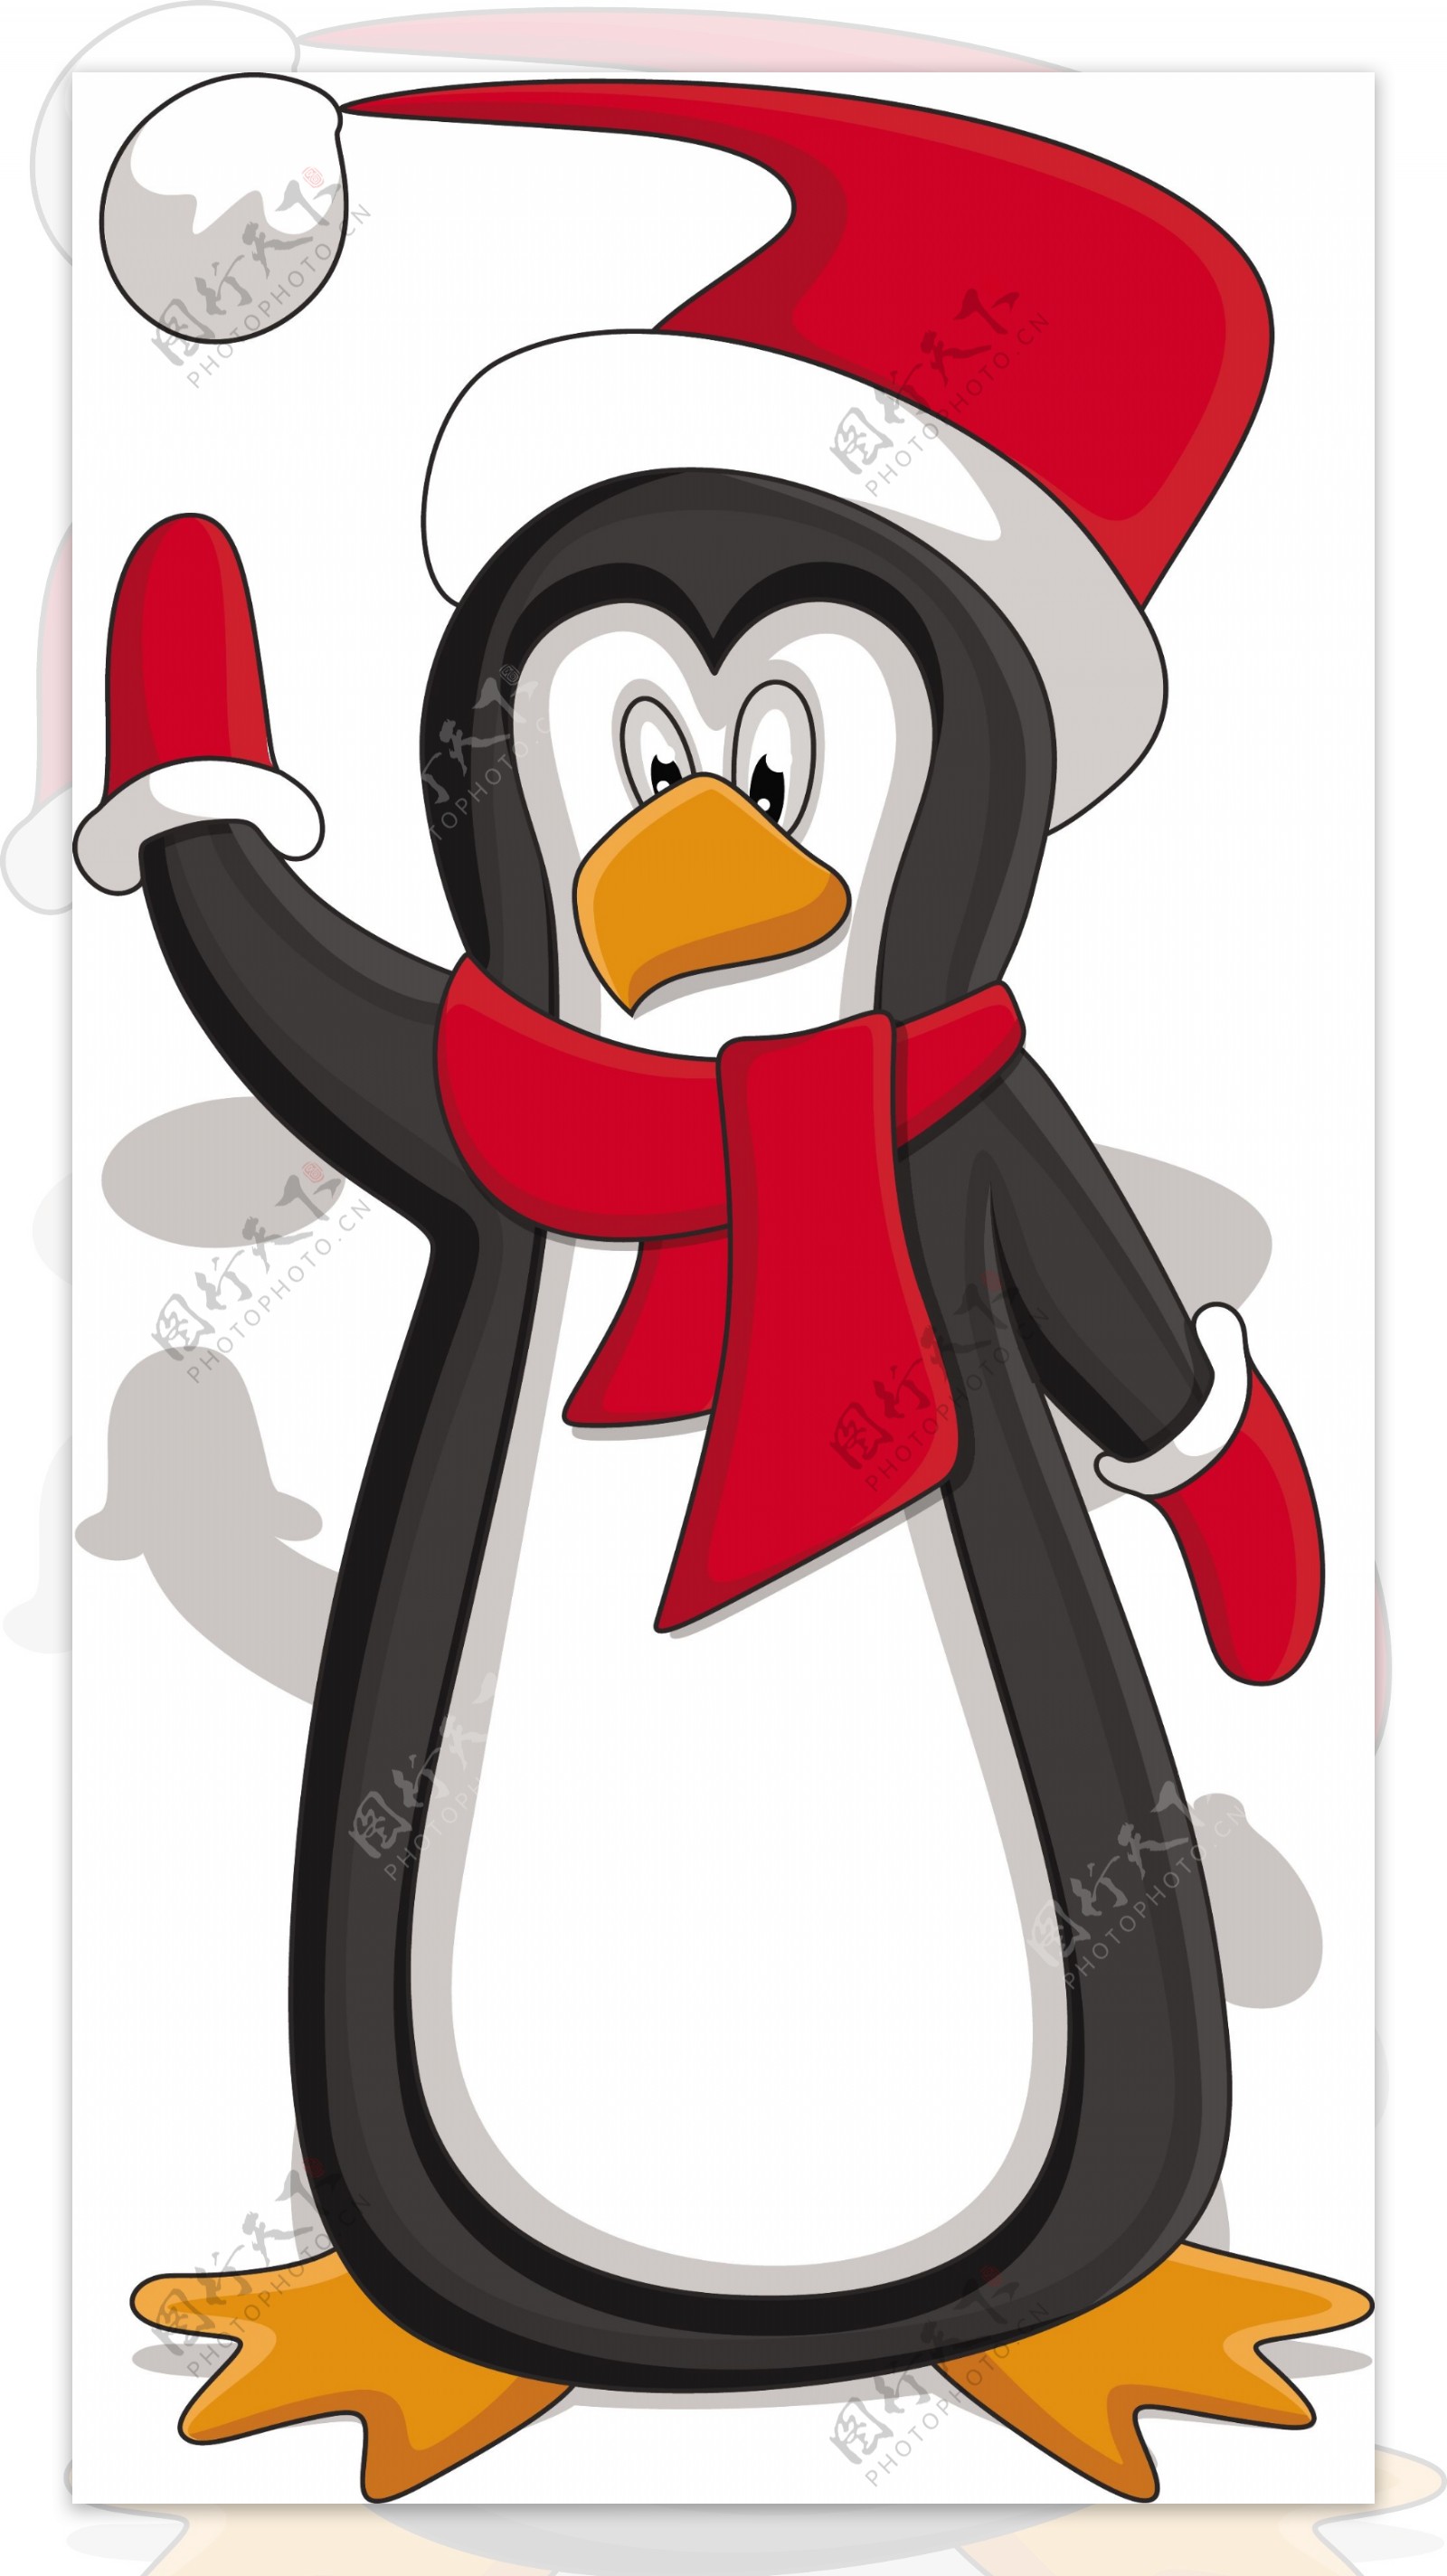 企鹅圣诞节矢量插画